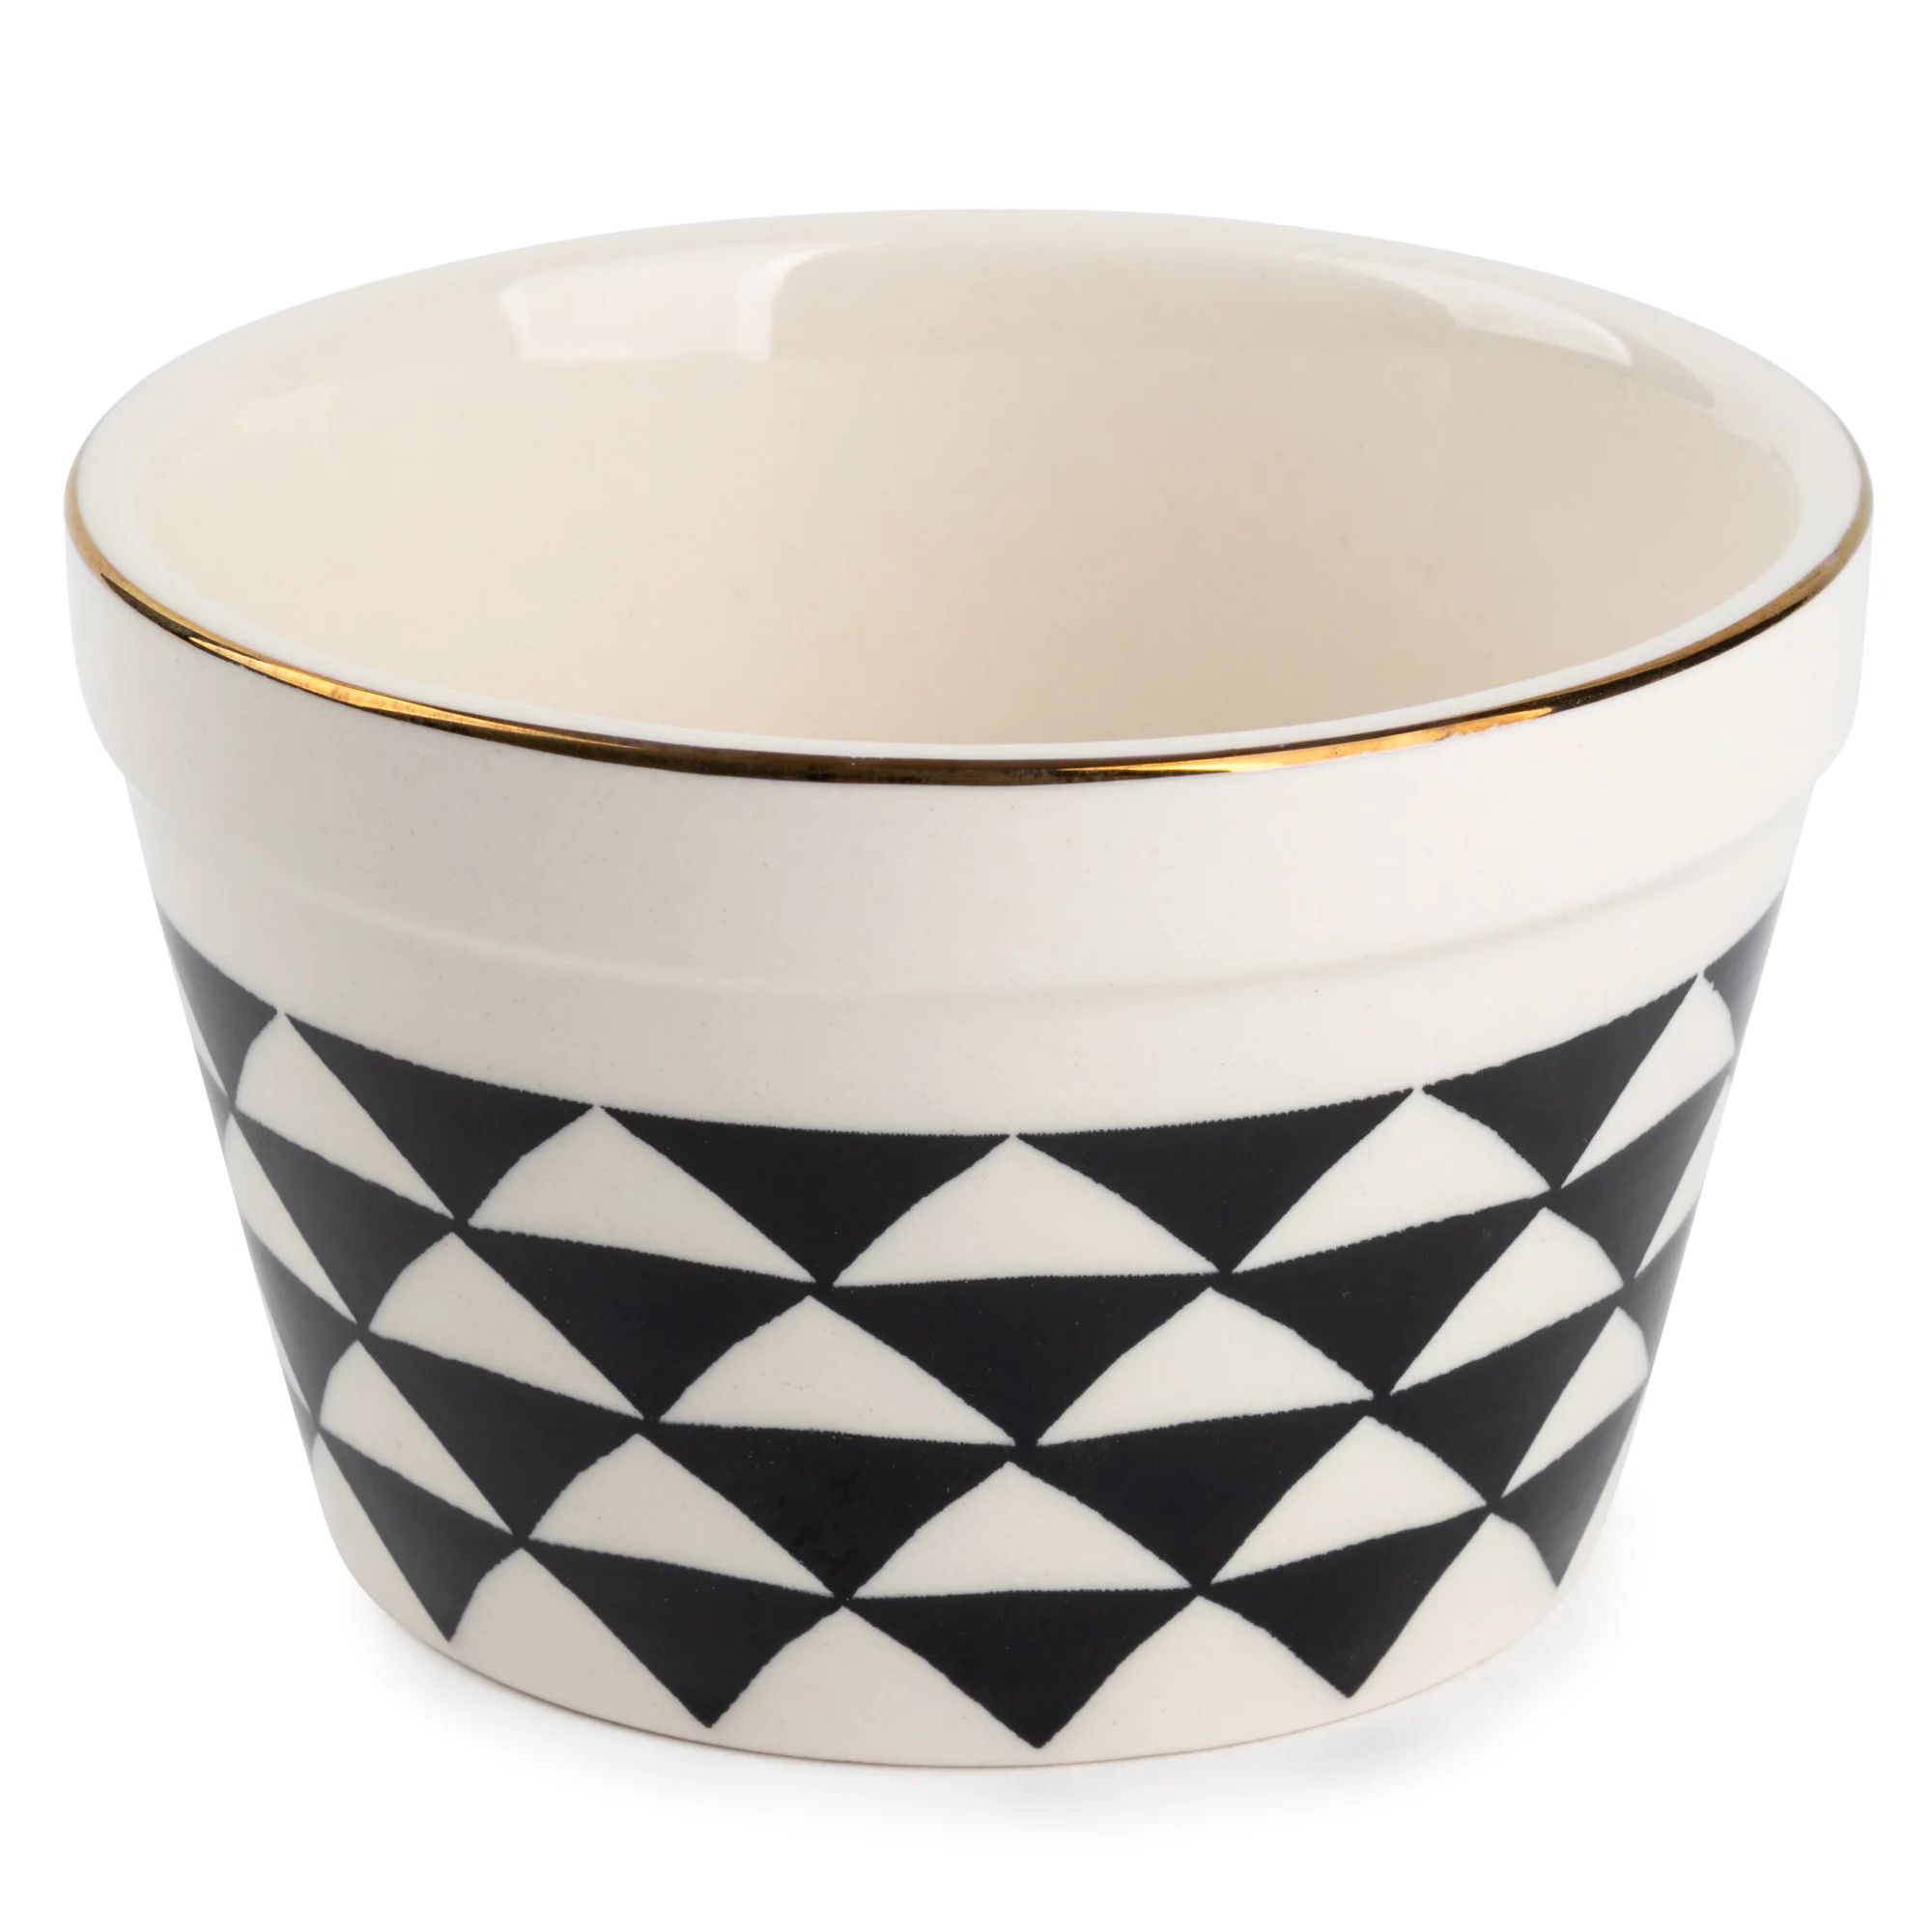 Thyme & Table Stoneware Ramekin, Black & White Medallion, 6-Piece Set | Walmart (US)